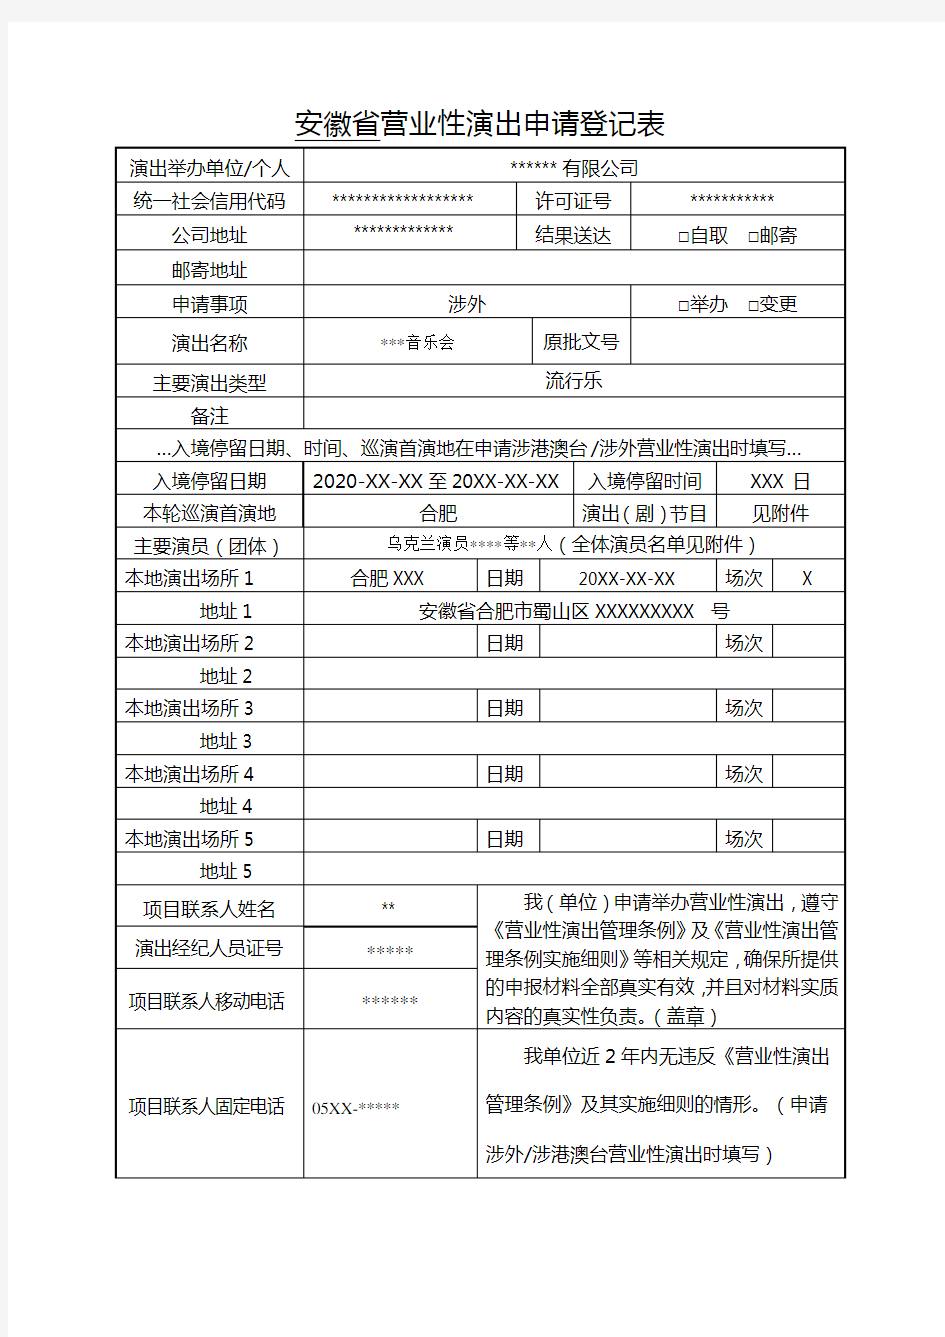 安徽省营业性演出申请登记表(电子表单)涉外